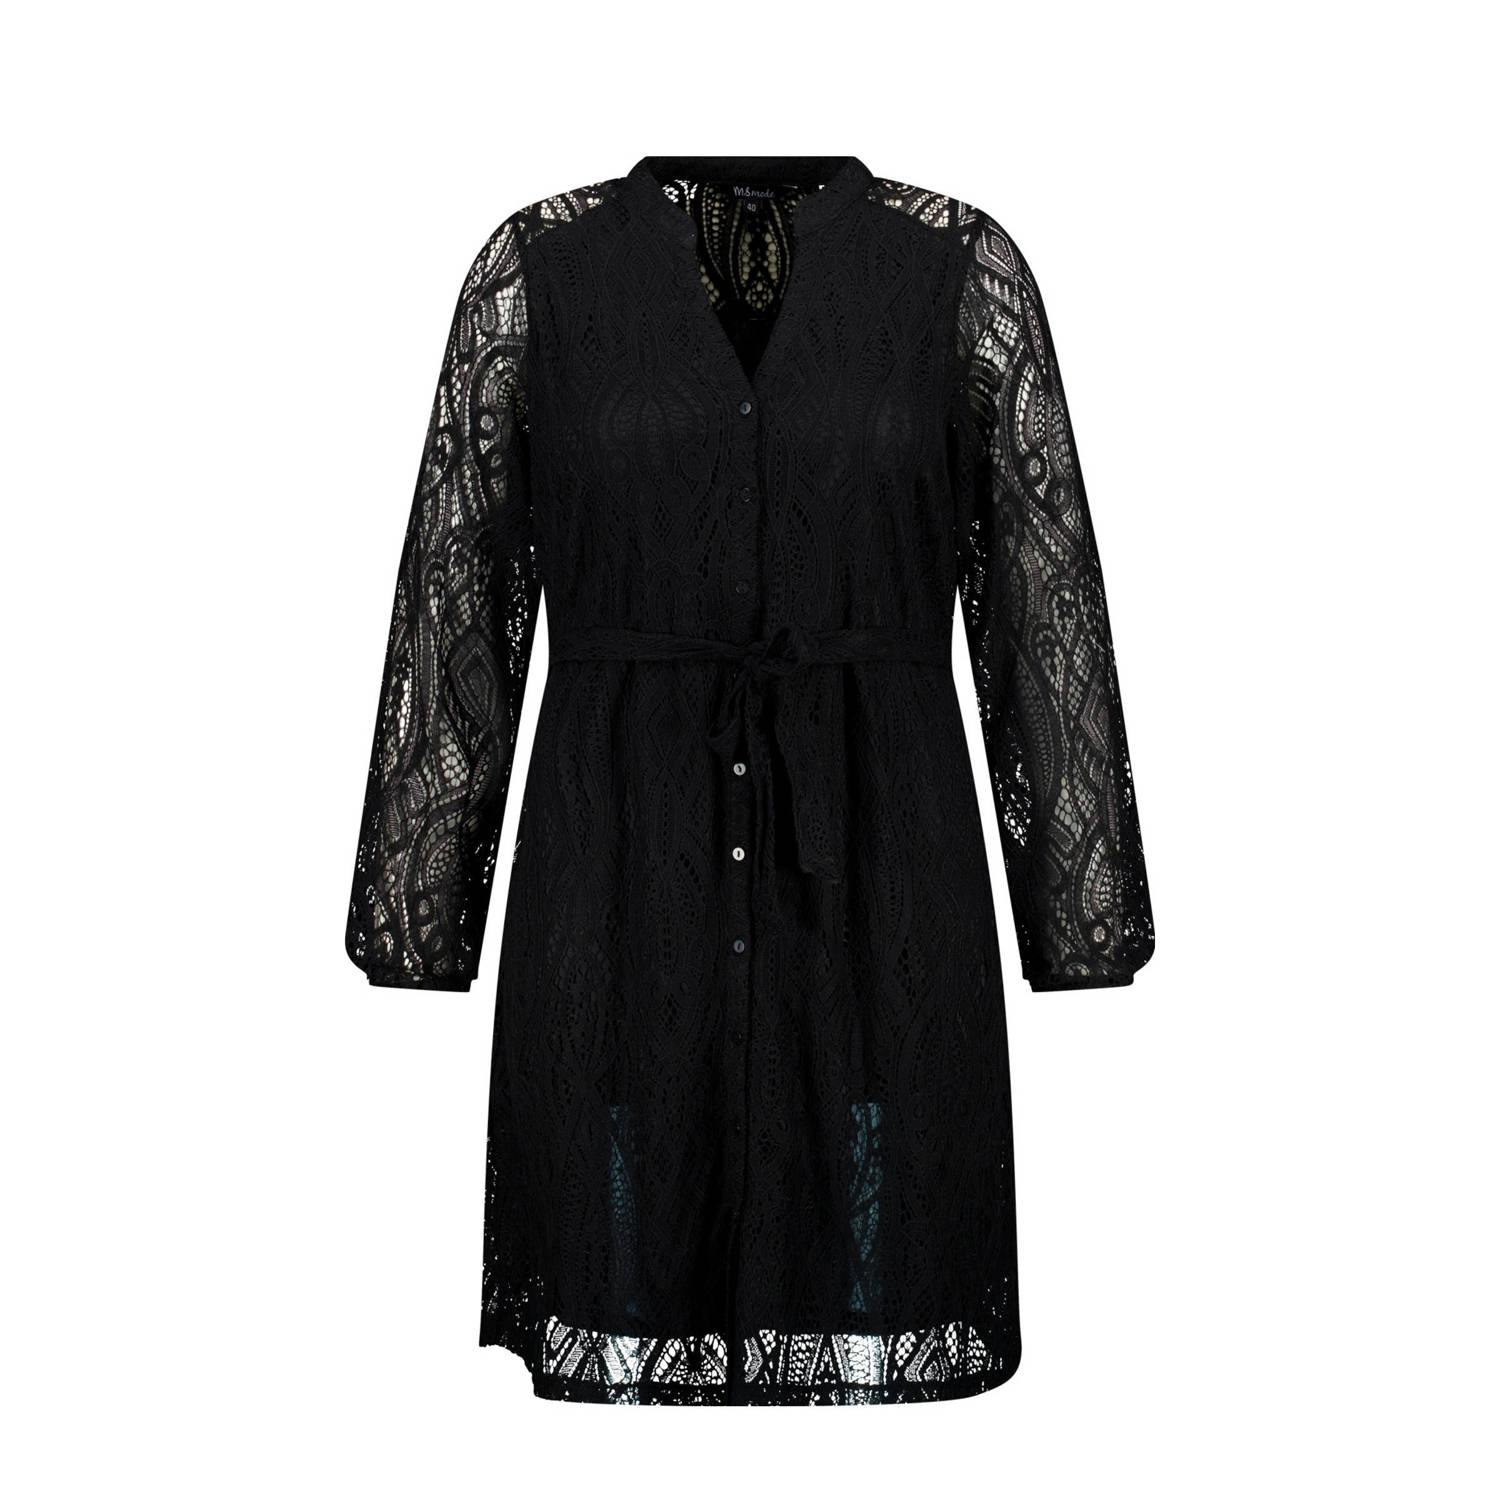 MS Mode blousejurk met kant zwart